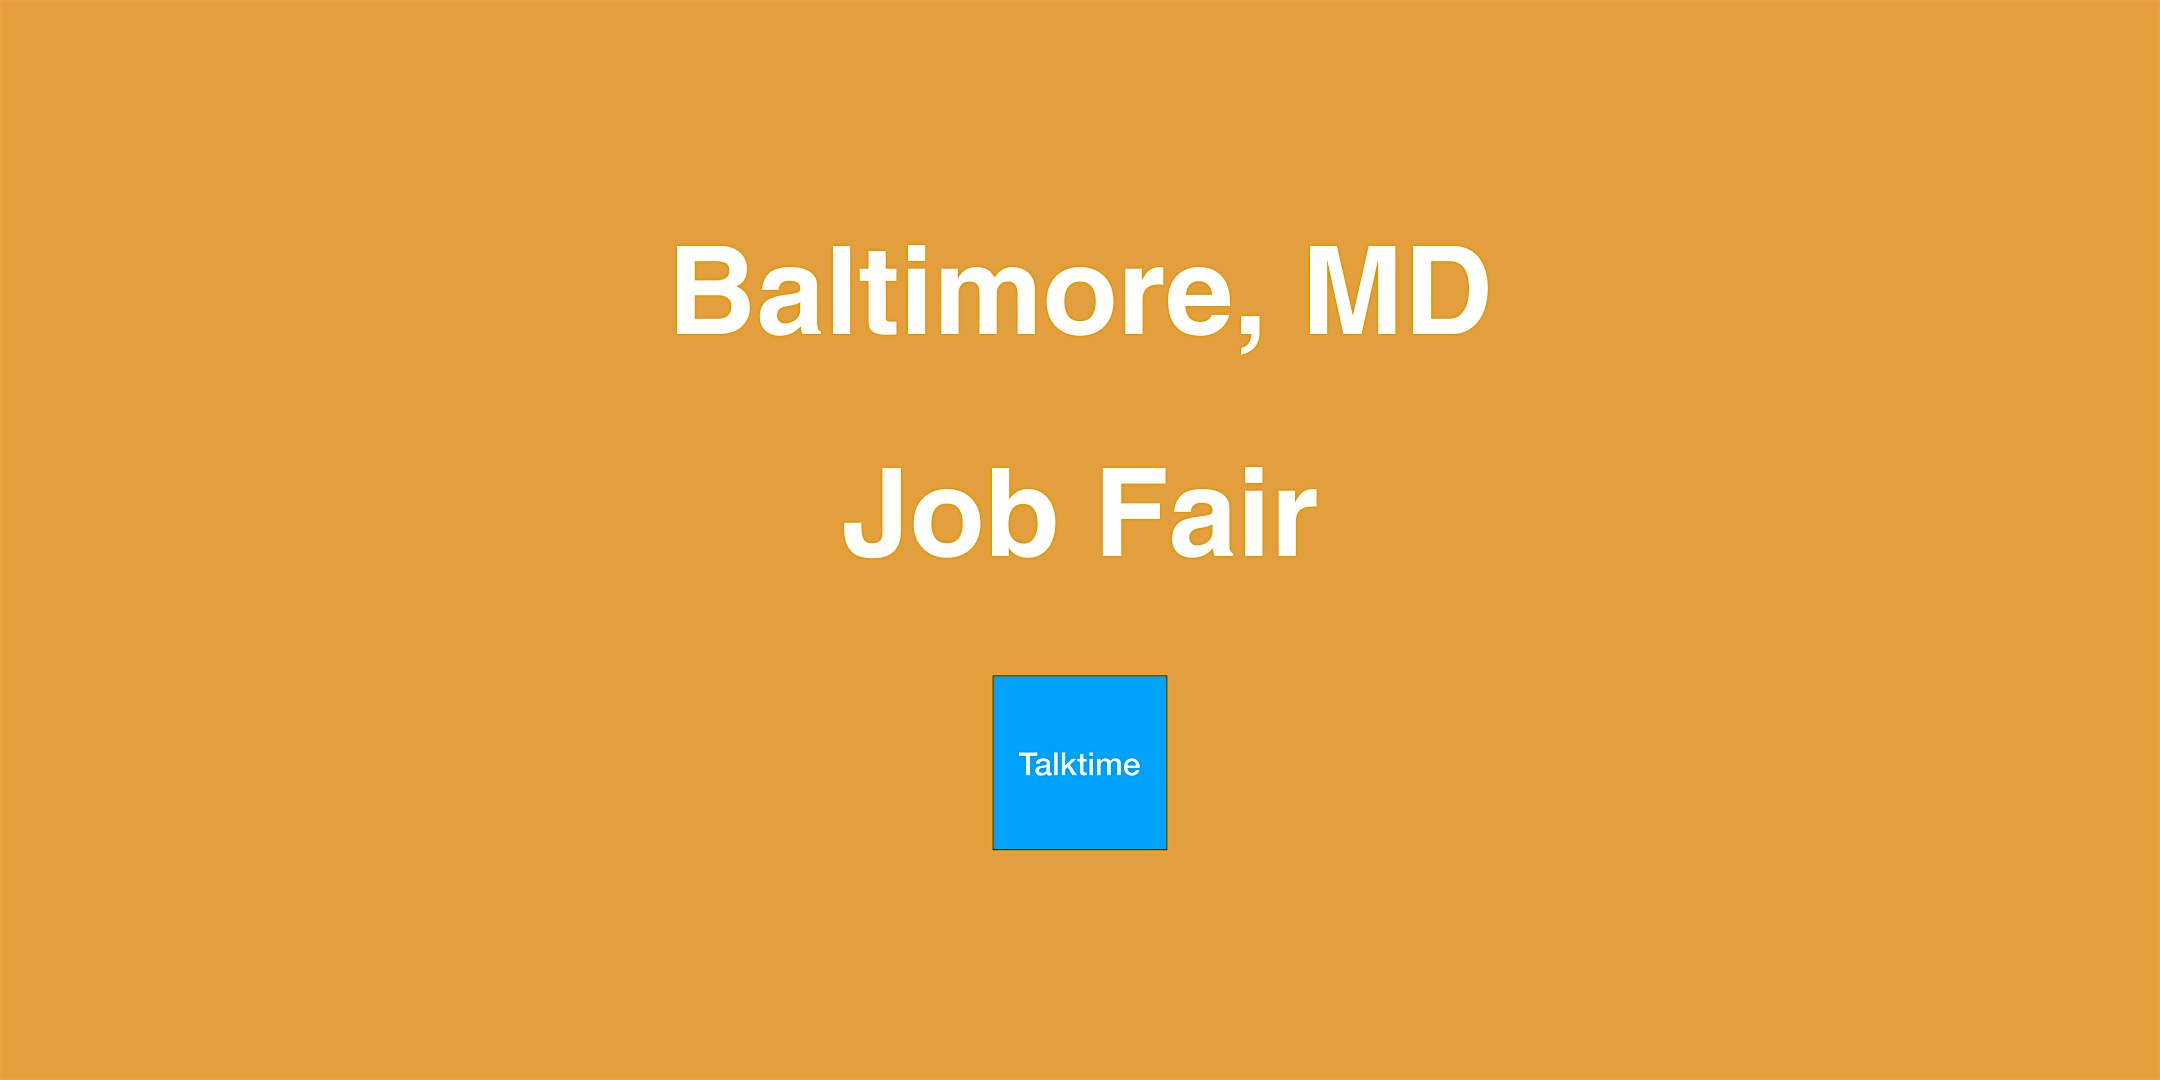 Job Fair - Baltimore